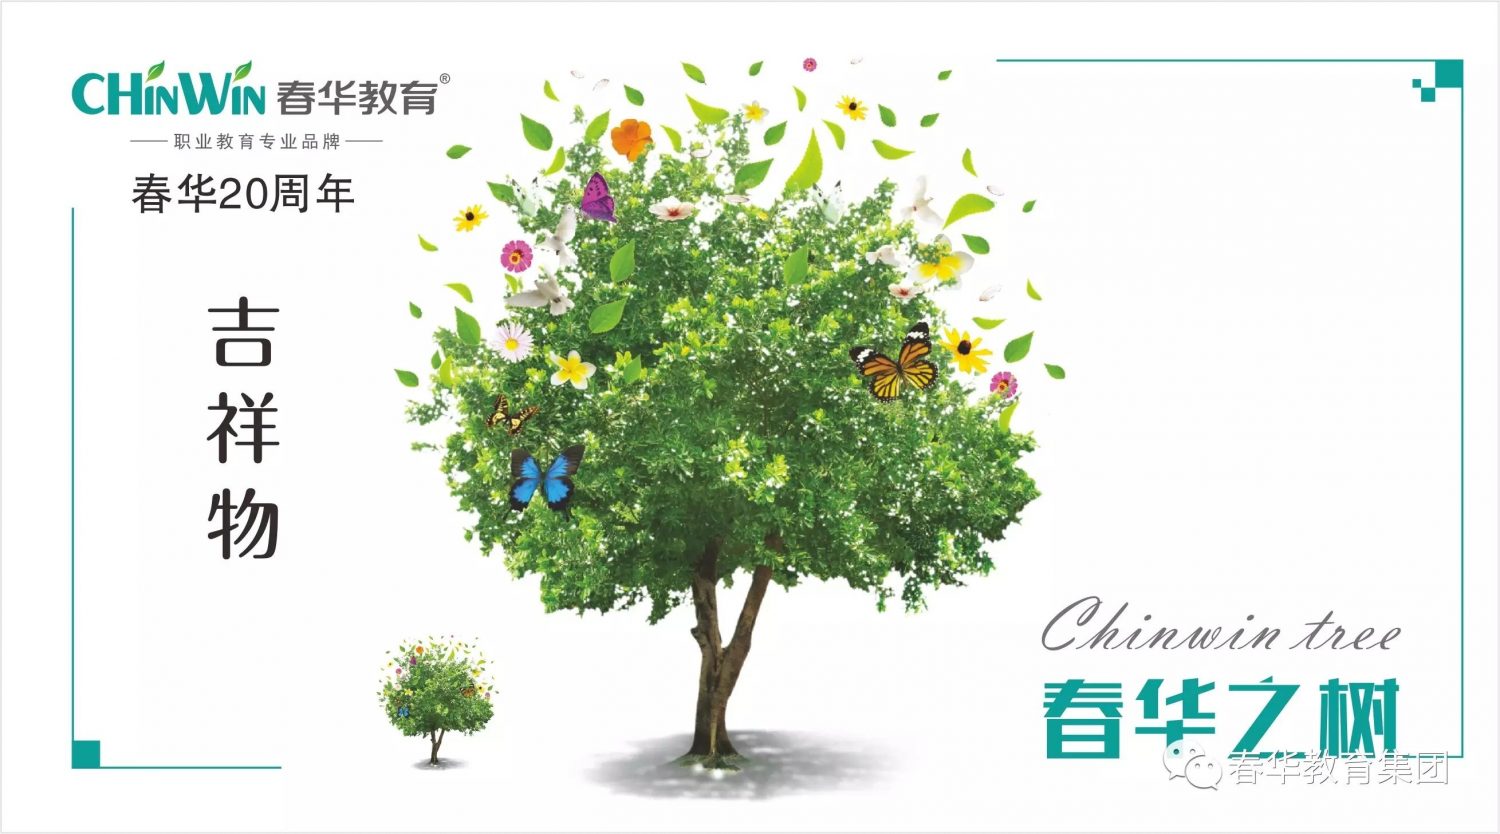 春华20周年发布全新官方吉祥物：一树繁华育佳材，百城千校绘蓝图!